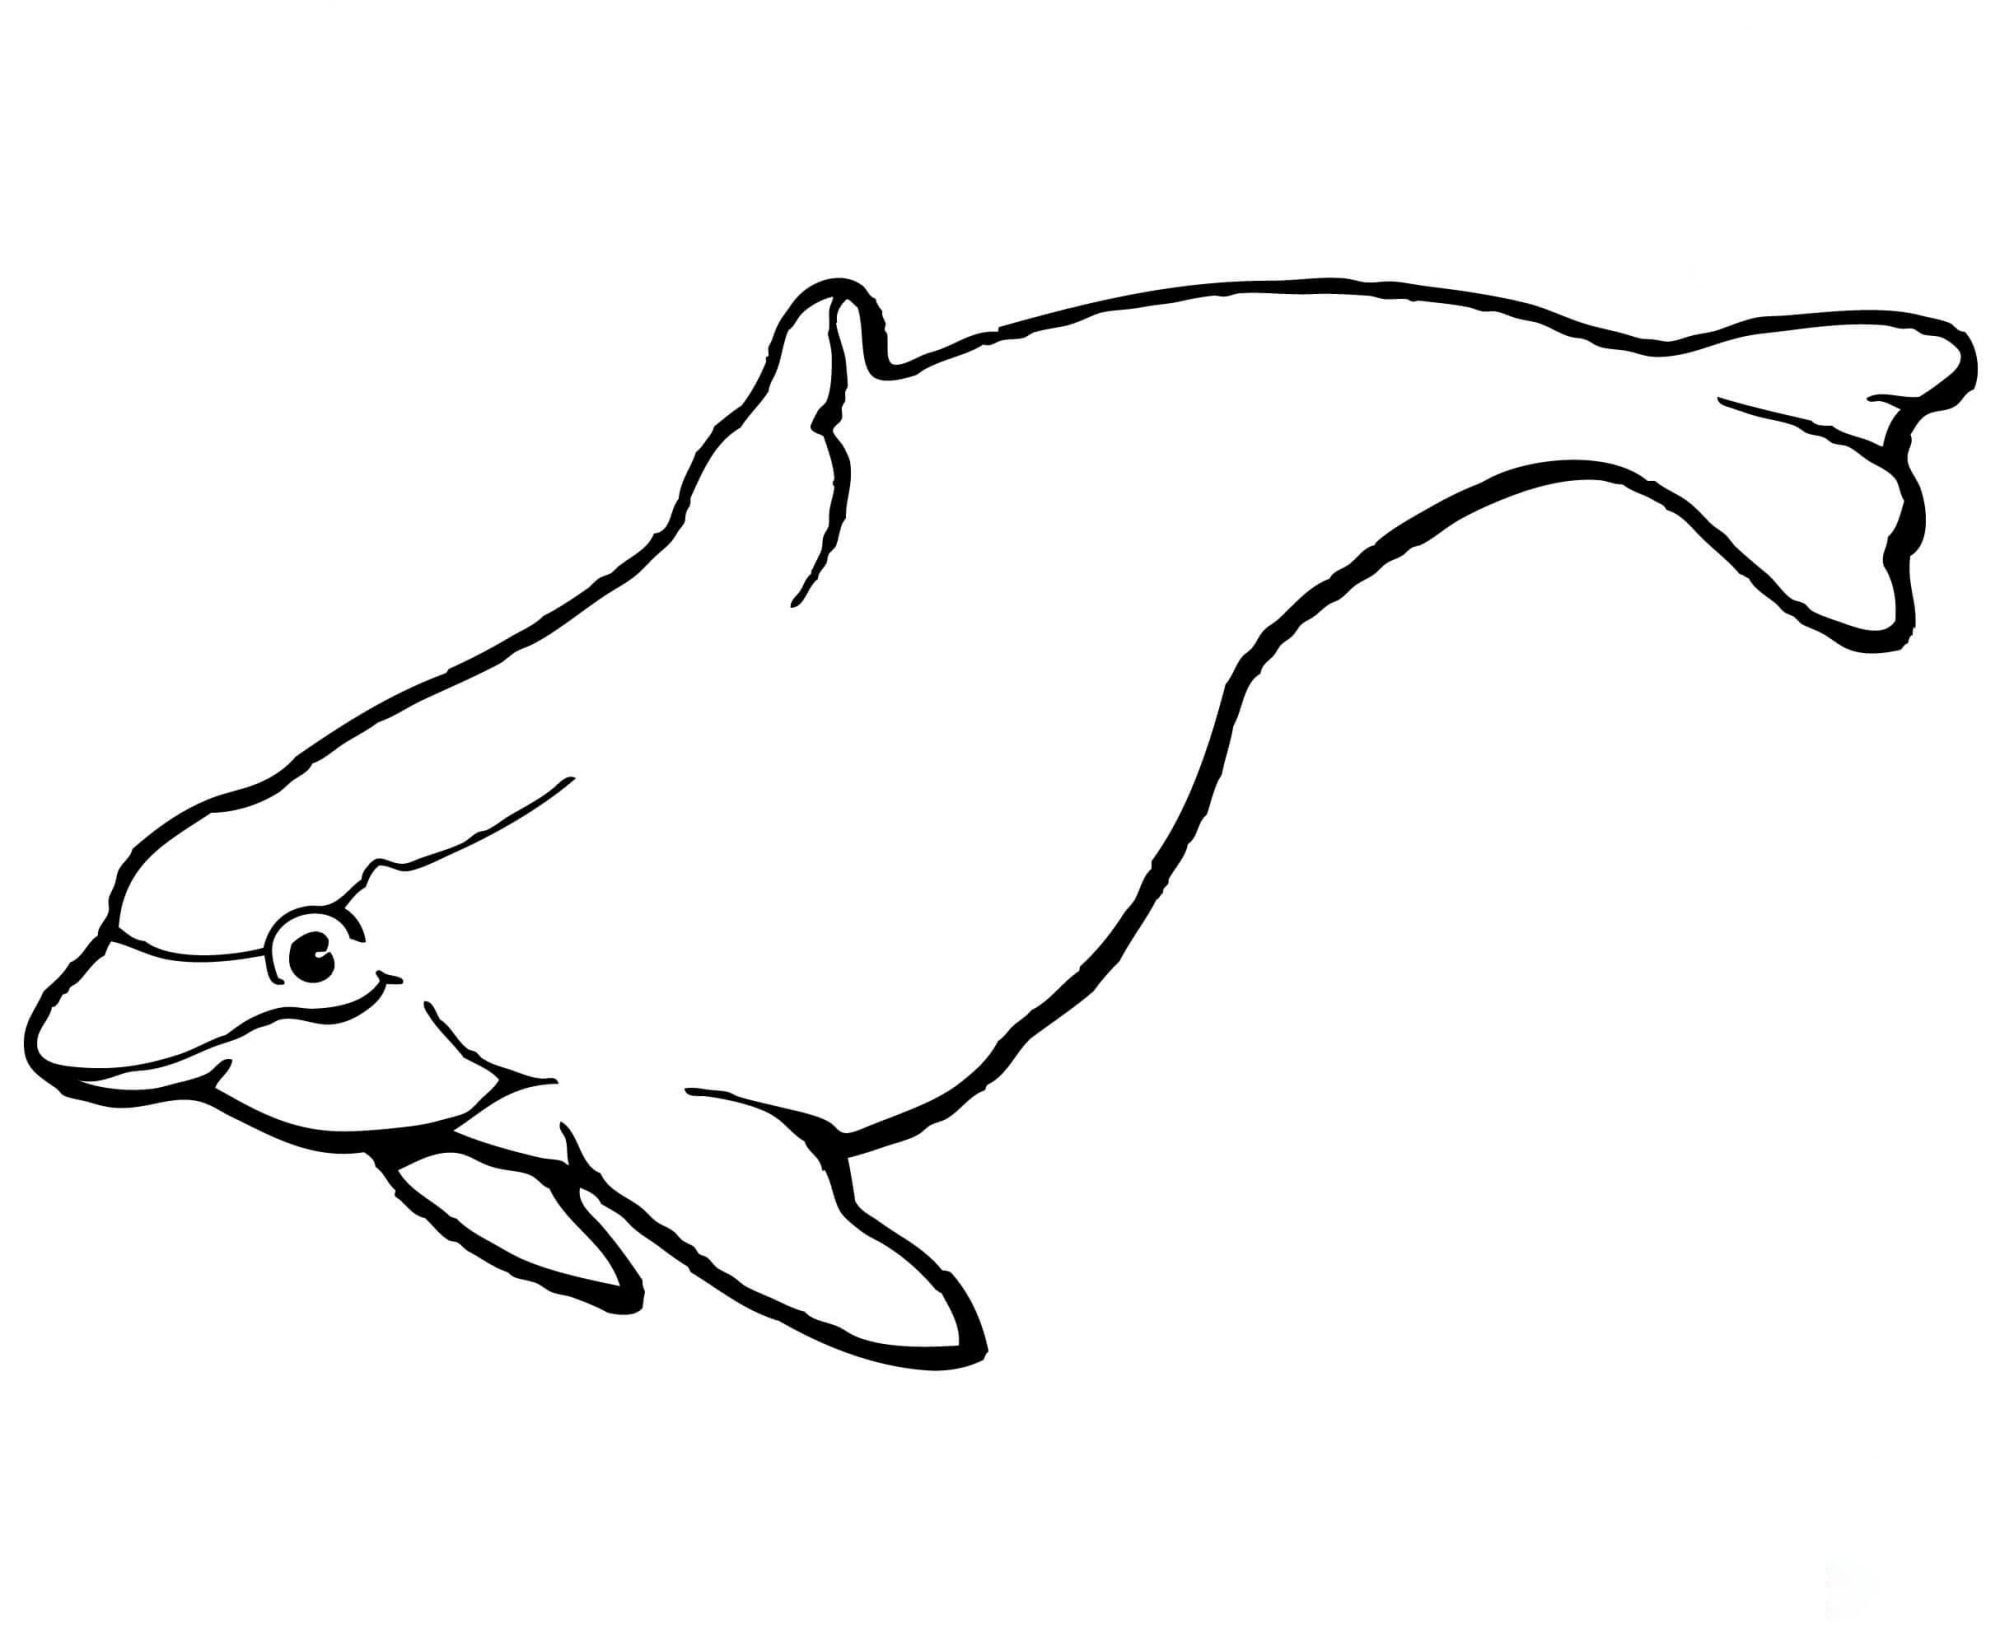 Der Schweinswaldelfin hat einen bauchigen Kopf und einen torpedoförmigen Delphinkörper